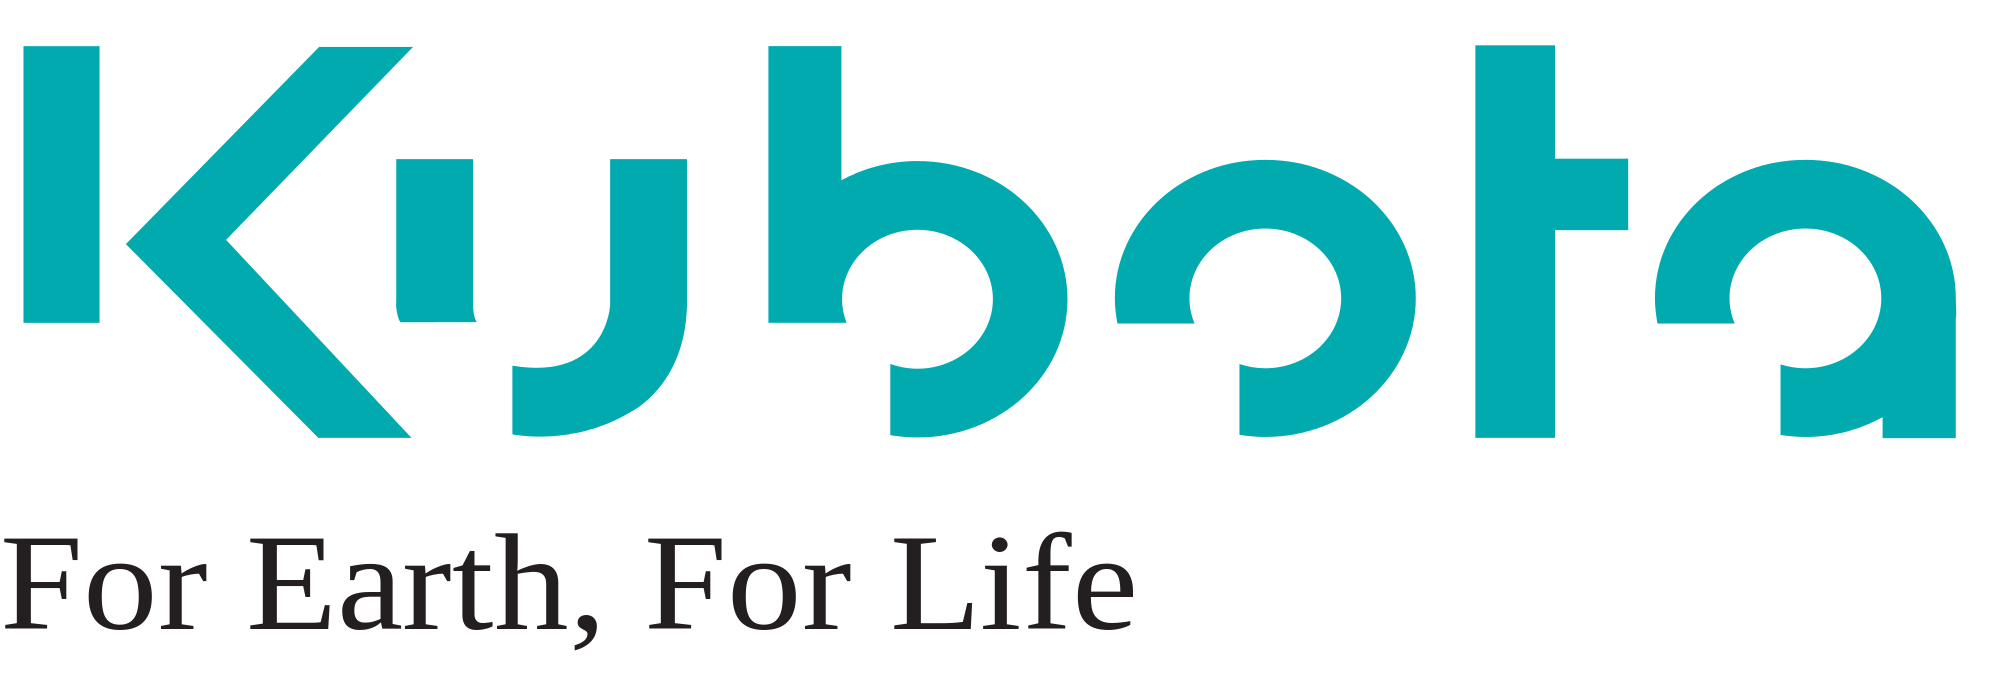 Kubota Logo photo - 1